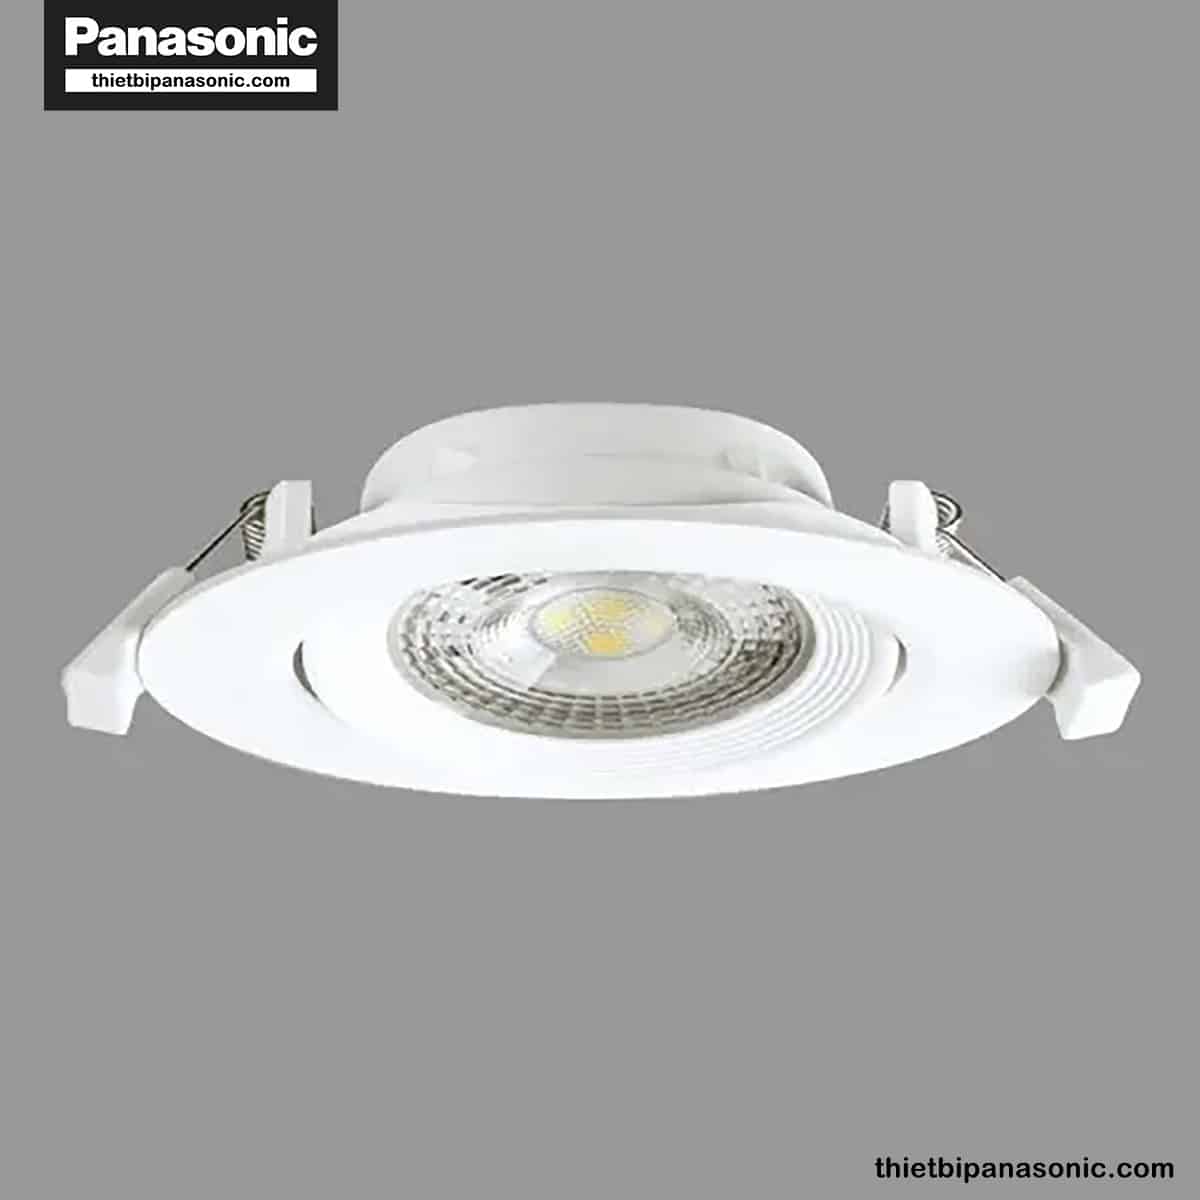 Đèn LED âm trần chỉnh góc Panasonic 7W tròn, góc chiếu 60° NNNC7624188 (ánh sáng vàng), NNNC7629188 (ánh sáng trung tính), NNNC7628188 (ánh sáng trắng)